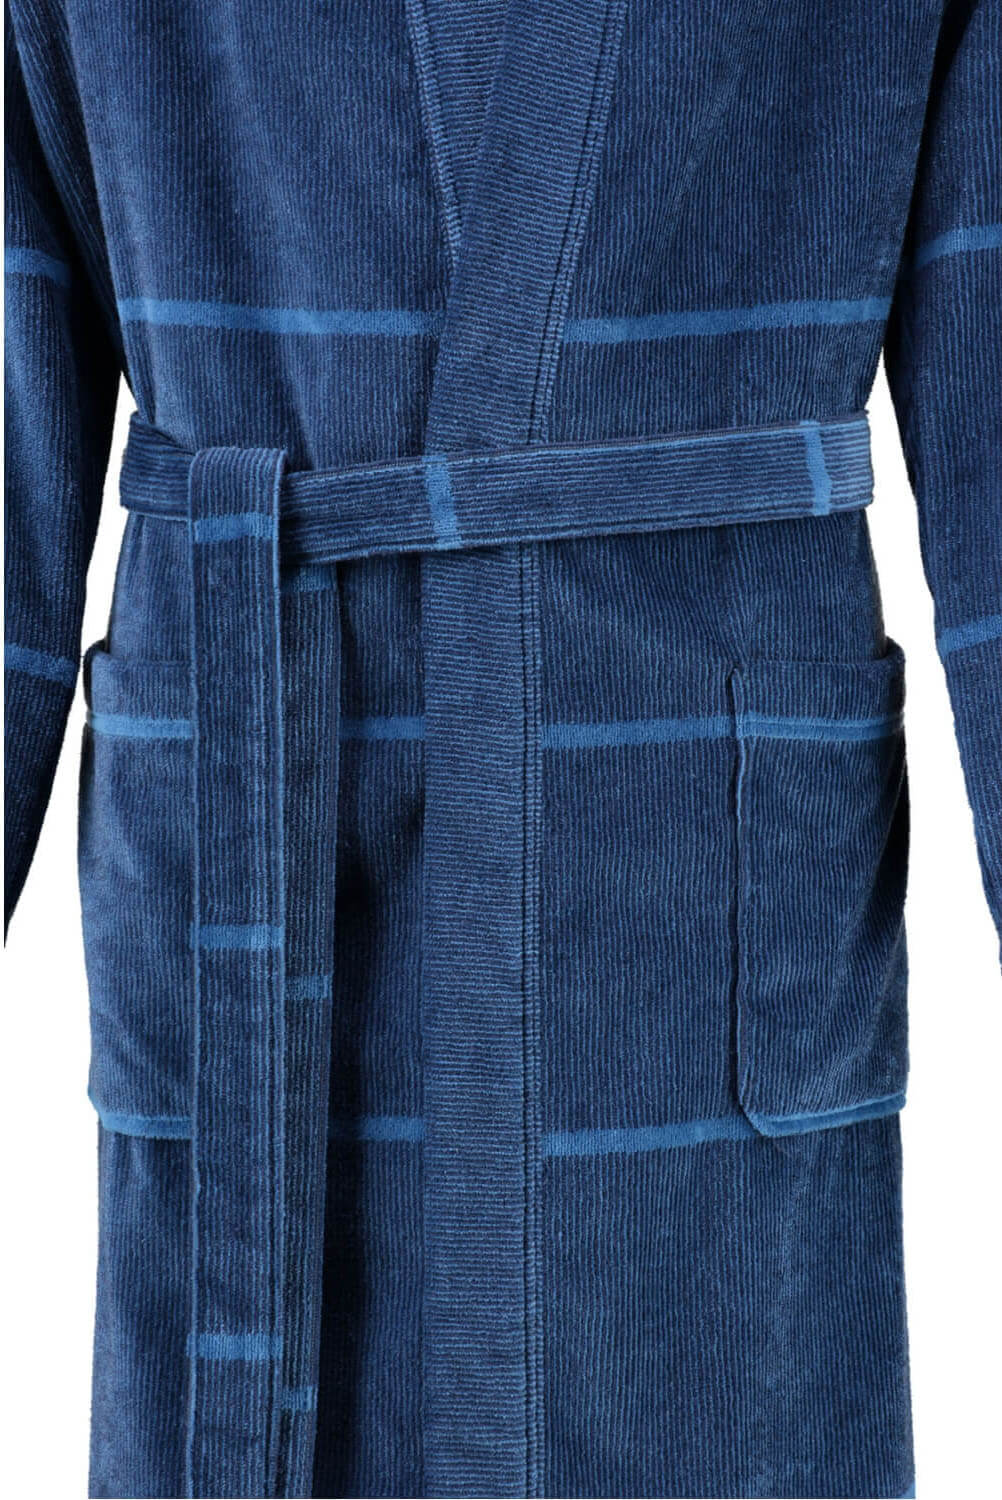 Мужской халат Cawo Kimono Blau ☞ Размер: 54